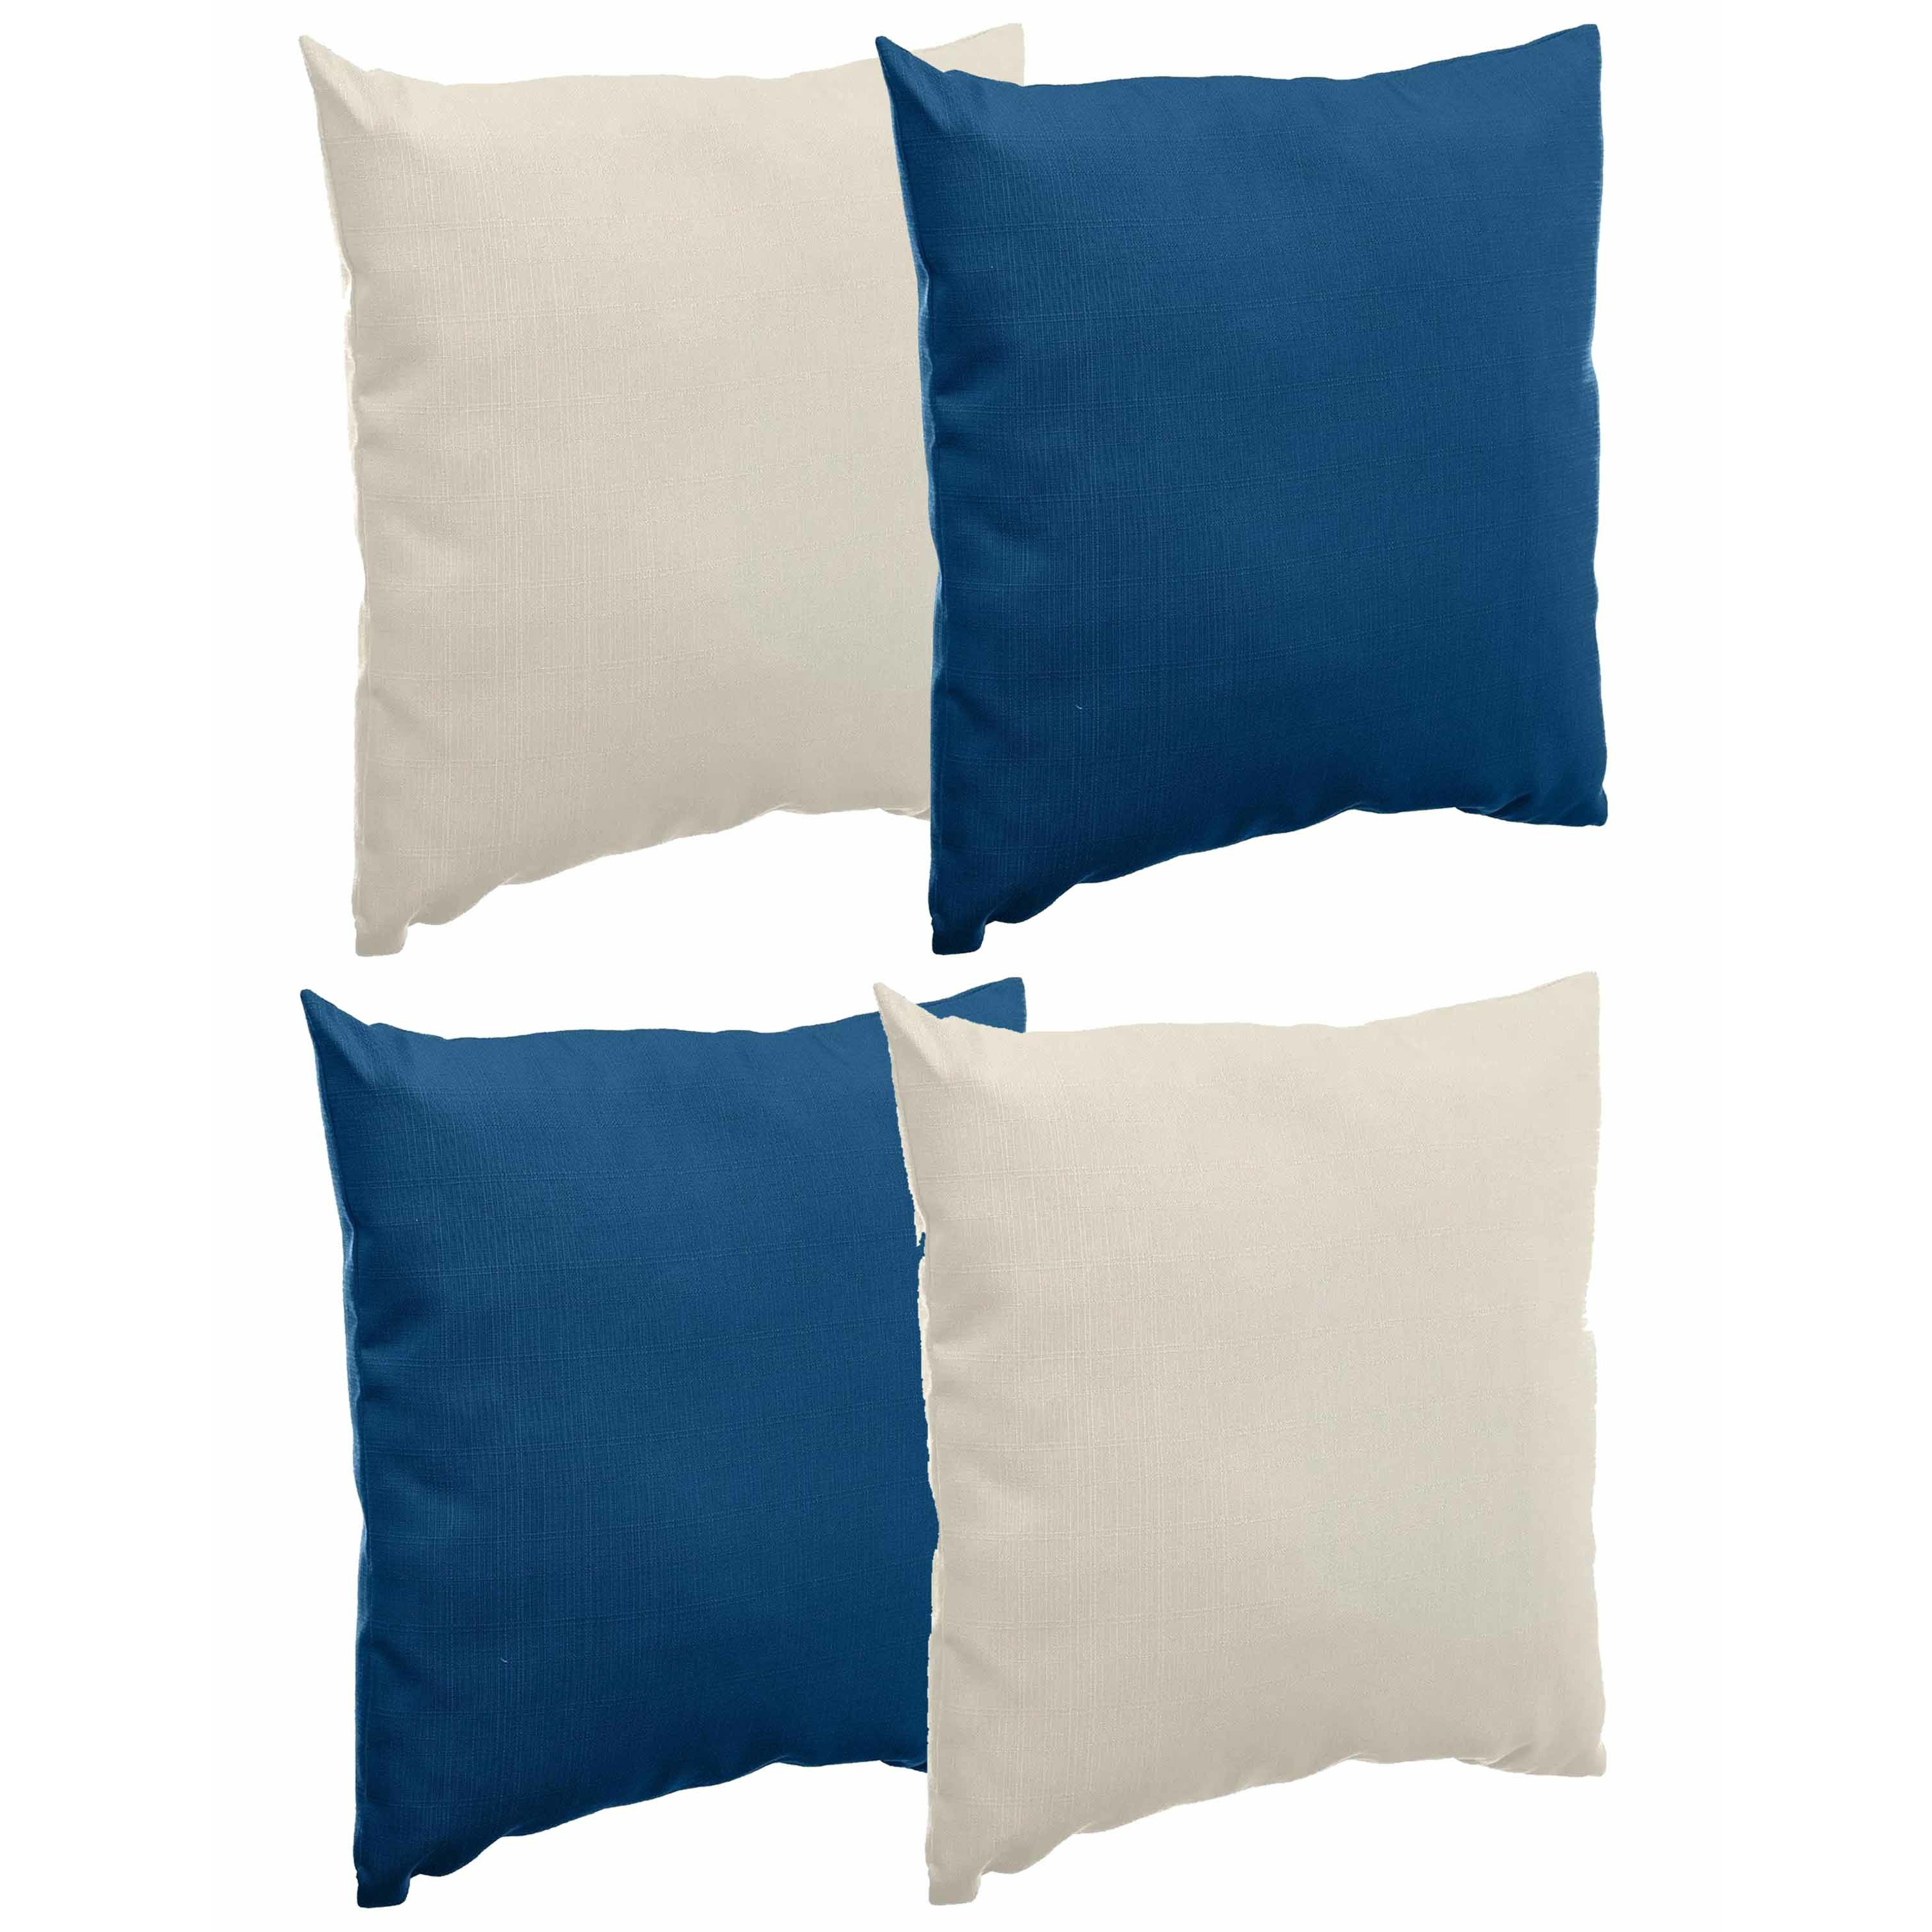 Bank-sier-tuin kussens voor binnen-buiten set 4x stuks beige-indigo blauw 40 x 40 cm